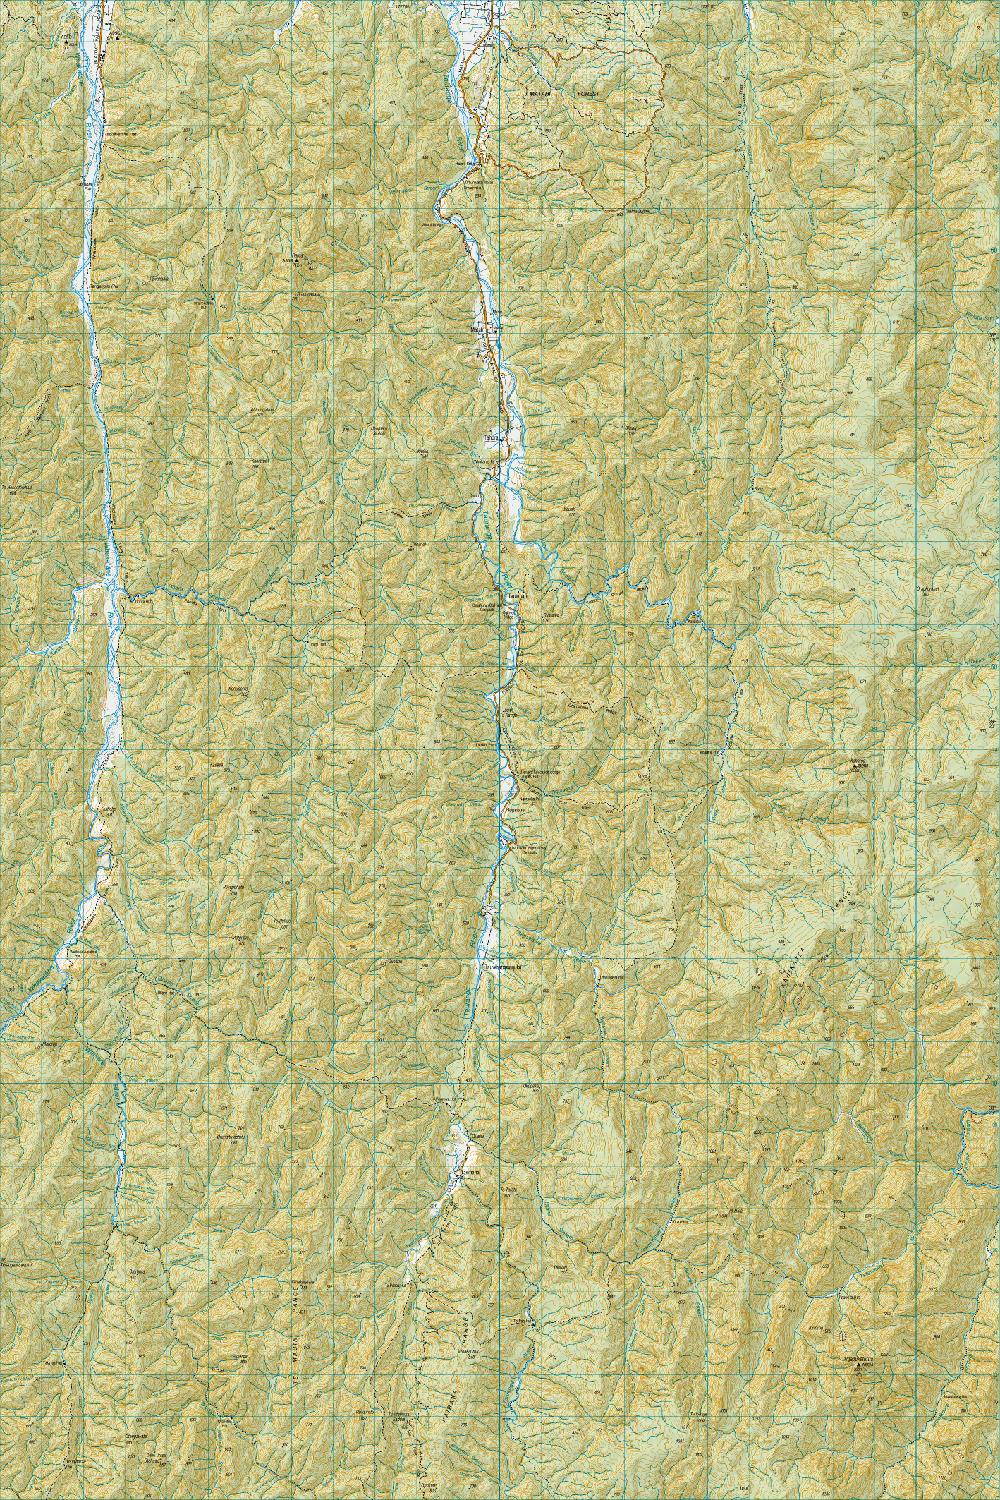 Topo map of Matahi